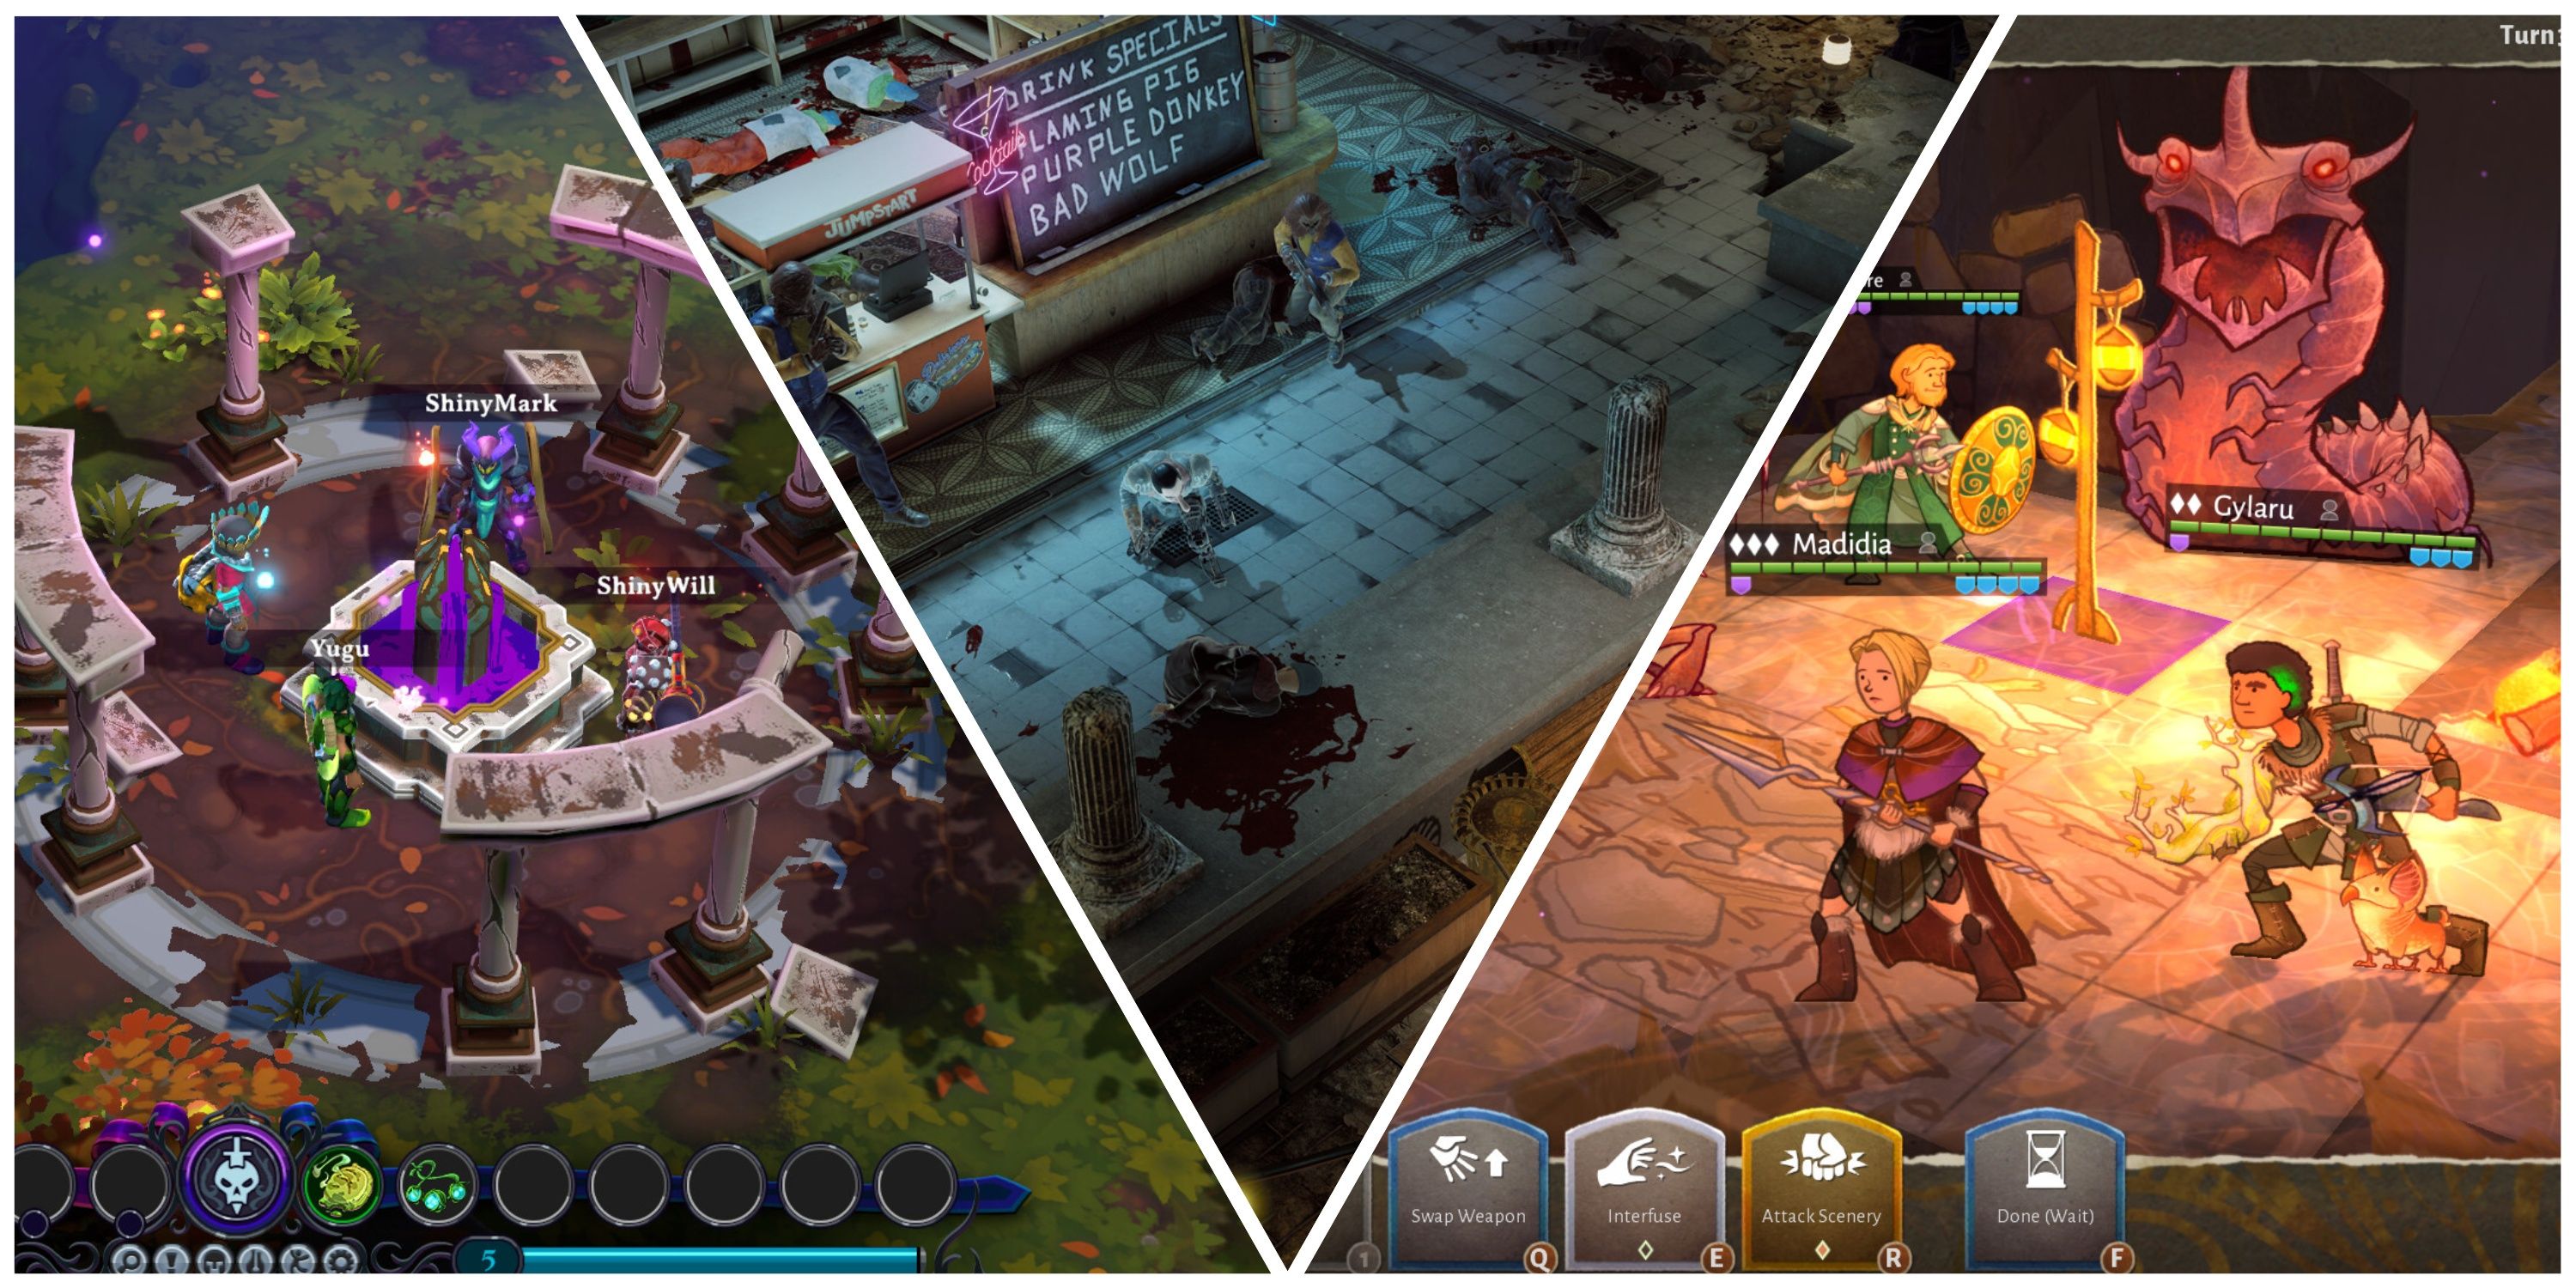 Jogos baseados em turnos com cooperação online (imagem em destaque) - Inkbound + Wasteland 3 + Wildermyth